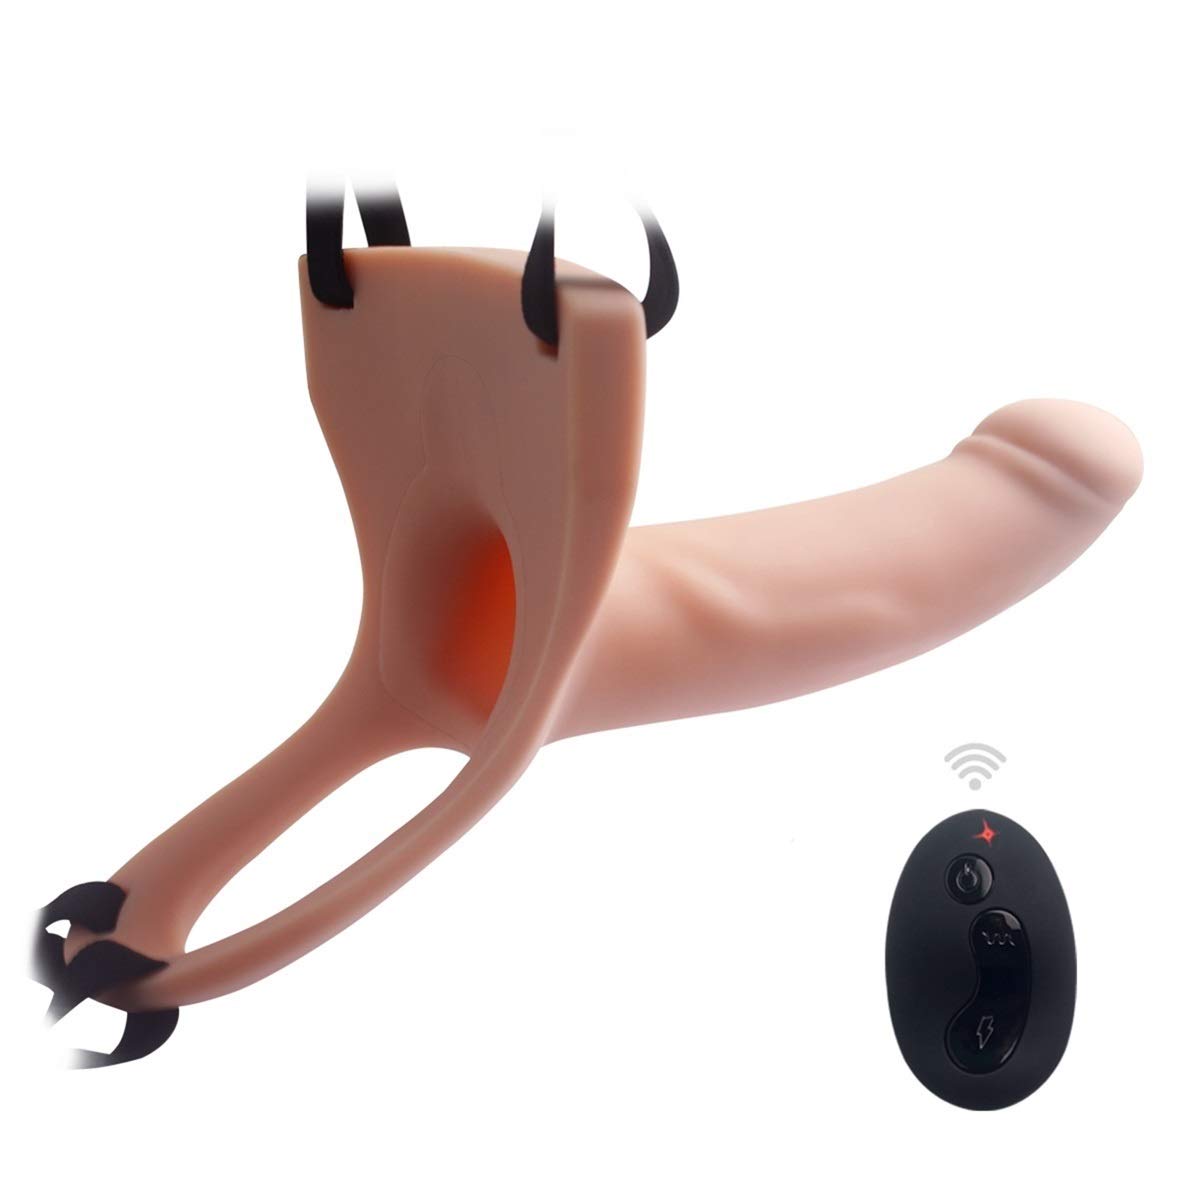 Dương vật giả rỗng ruột điều khiển từ xa Curved Dong USA – DVDĐ495 | quần dương vật rỗng đồ chơi đôn dên cho nam giới